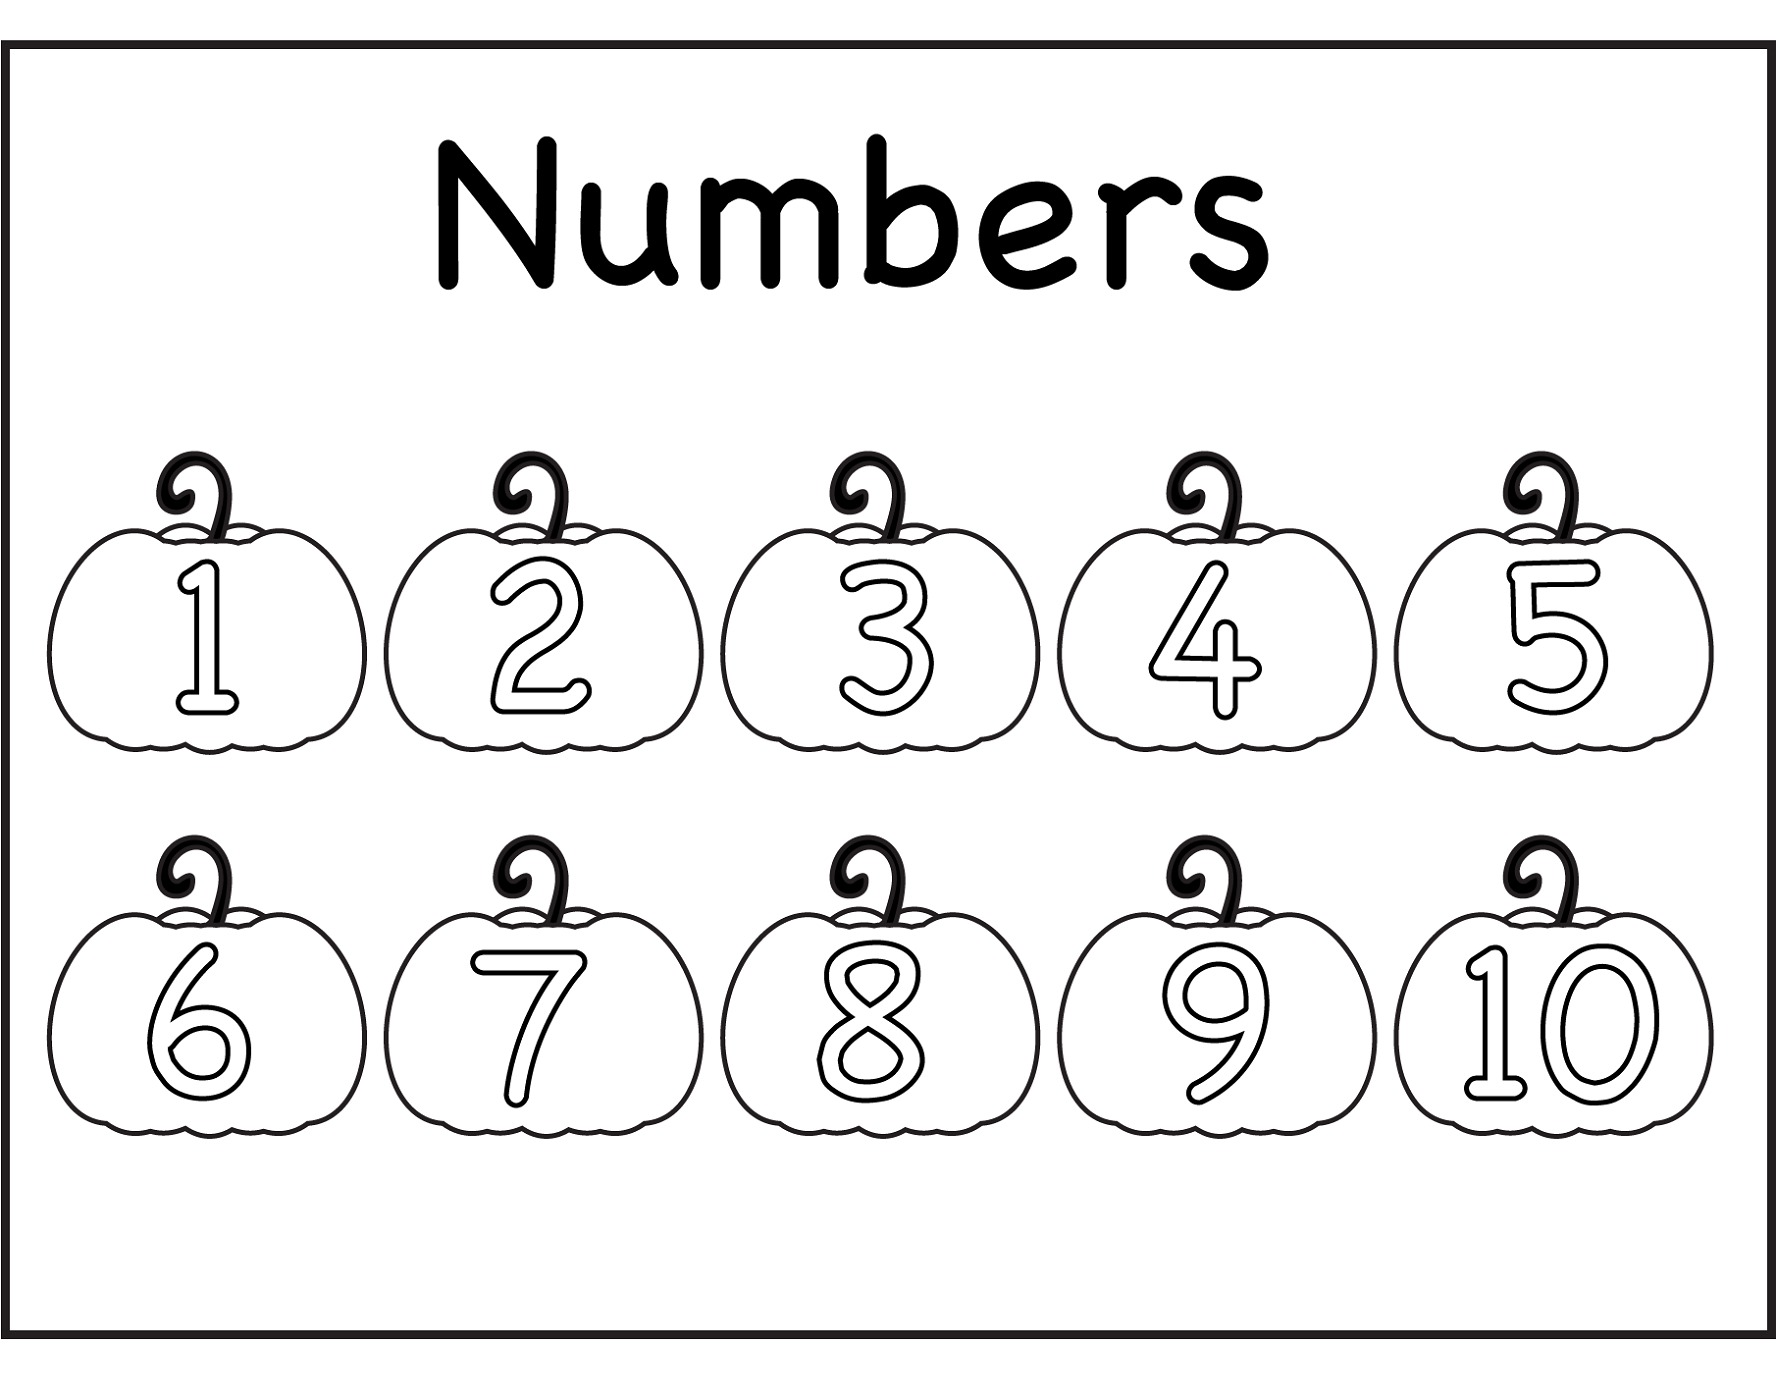 10-best-large-printable-numbers-11-20-printableecom-playful-printable-numbers-1-10-stencils